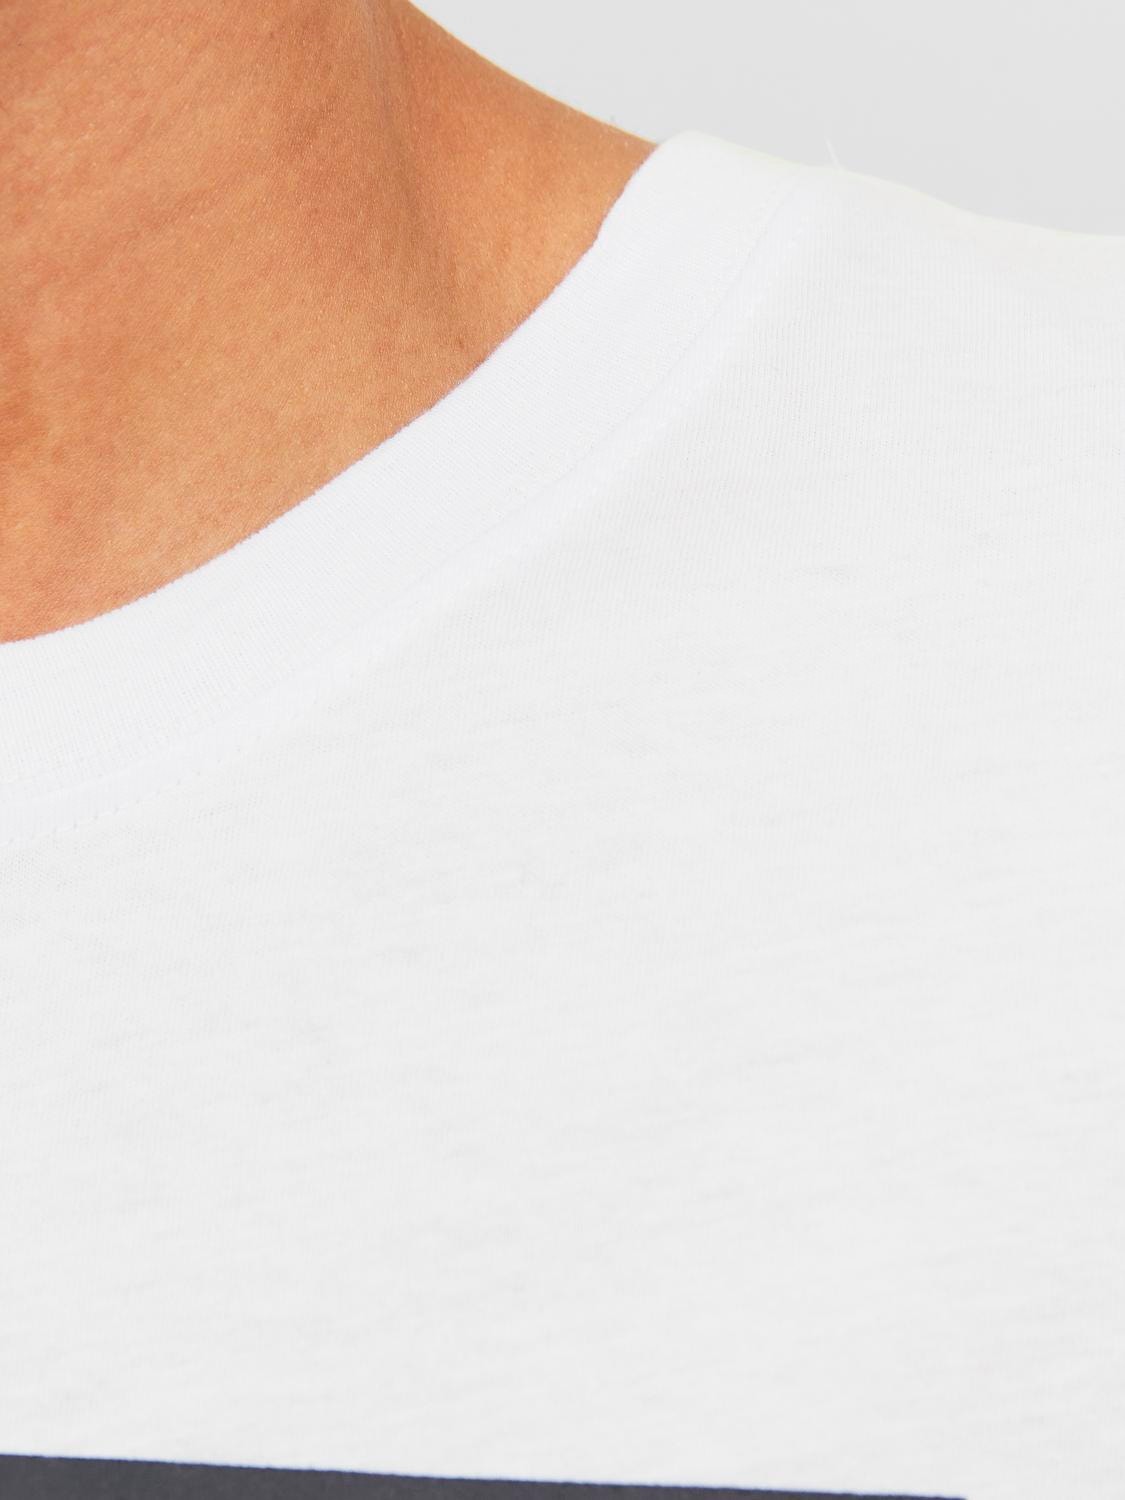 Jack & Jones Logo Pyöreä pääntie T-paita -White - 12242492